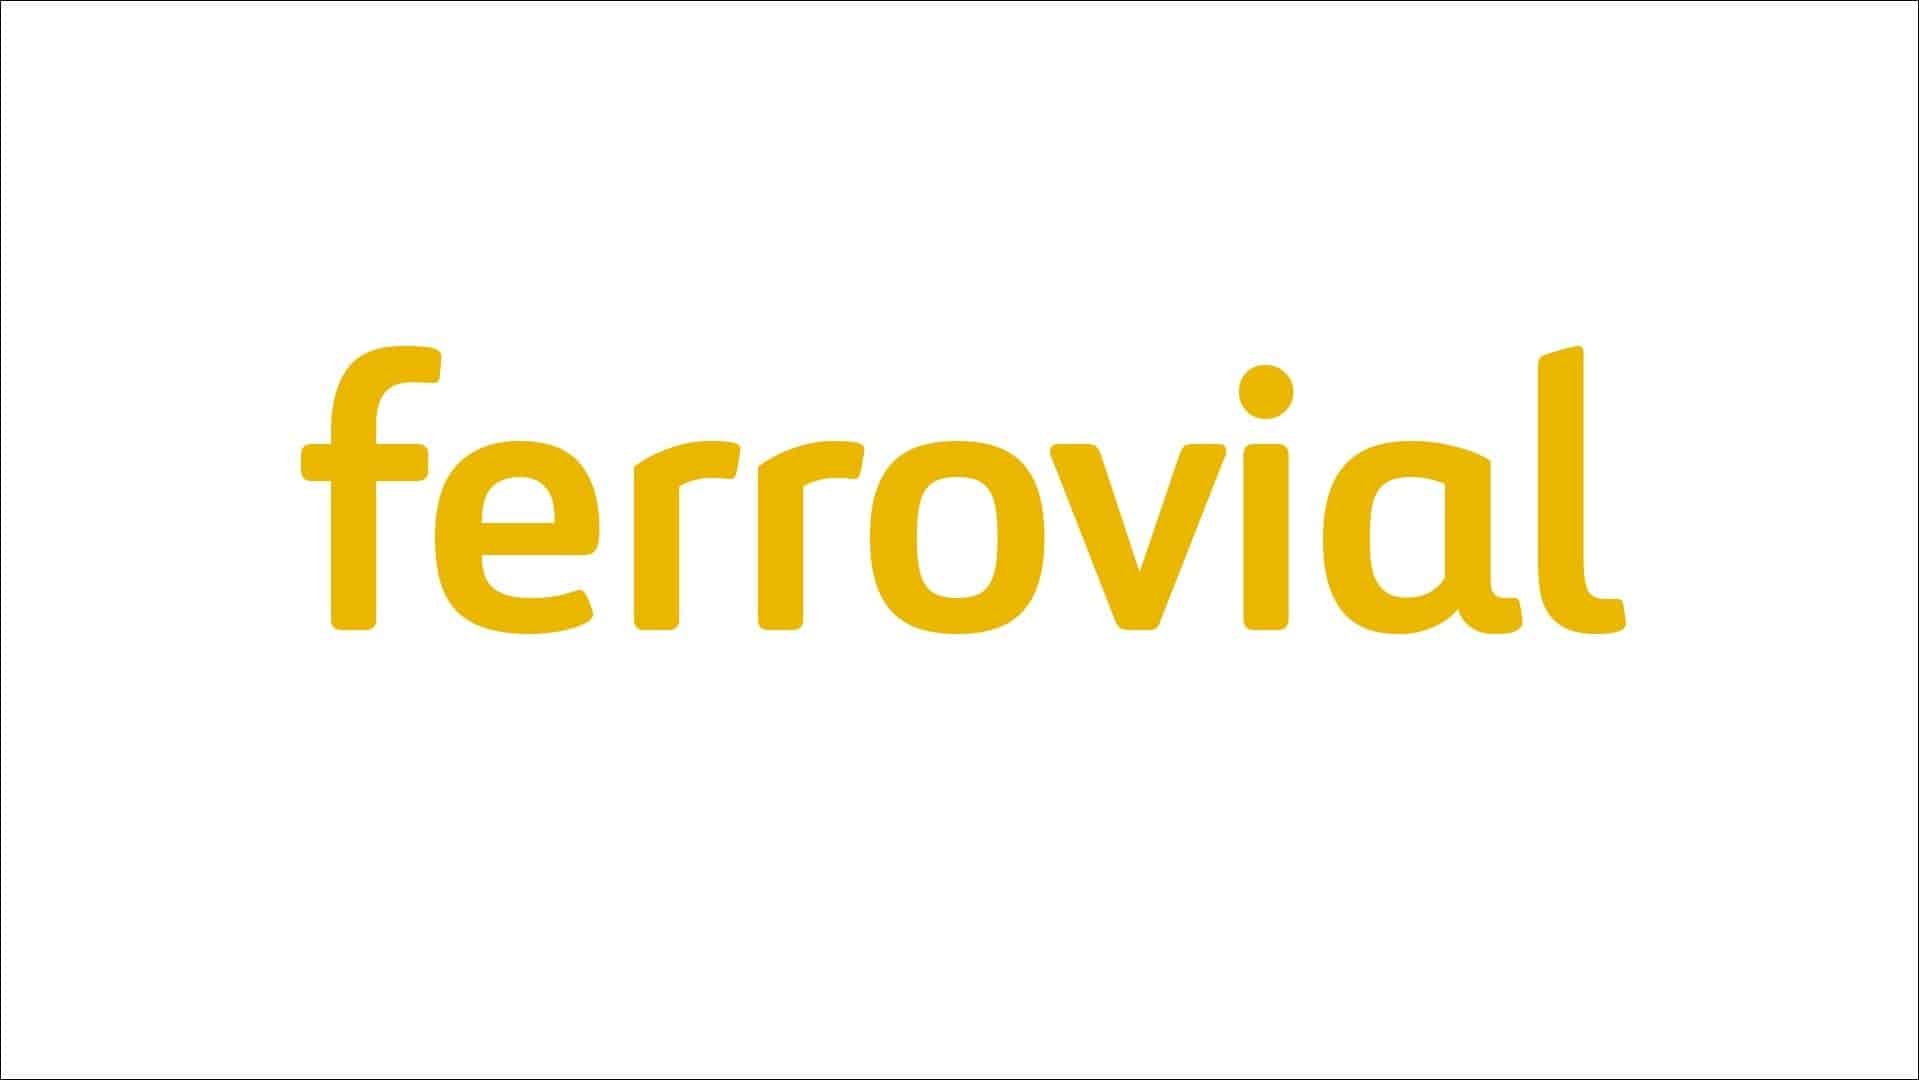 Ferrovial 